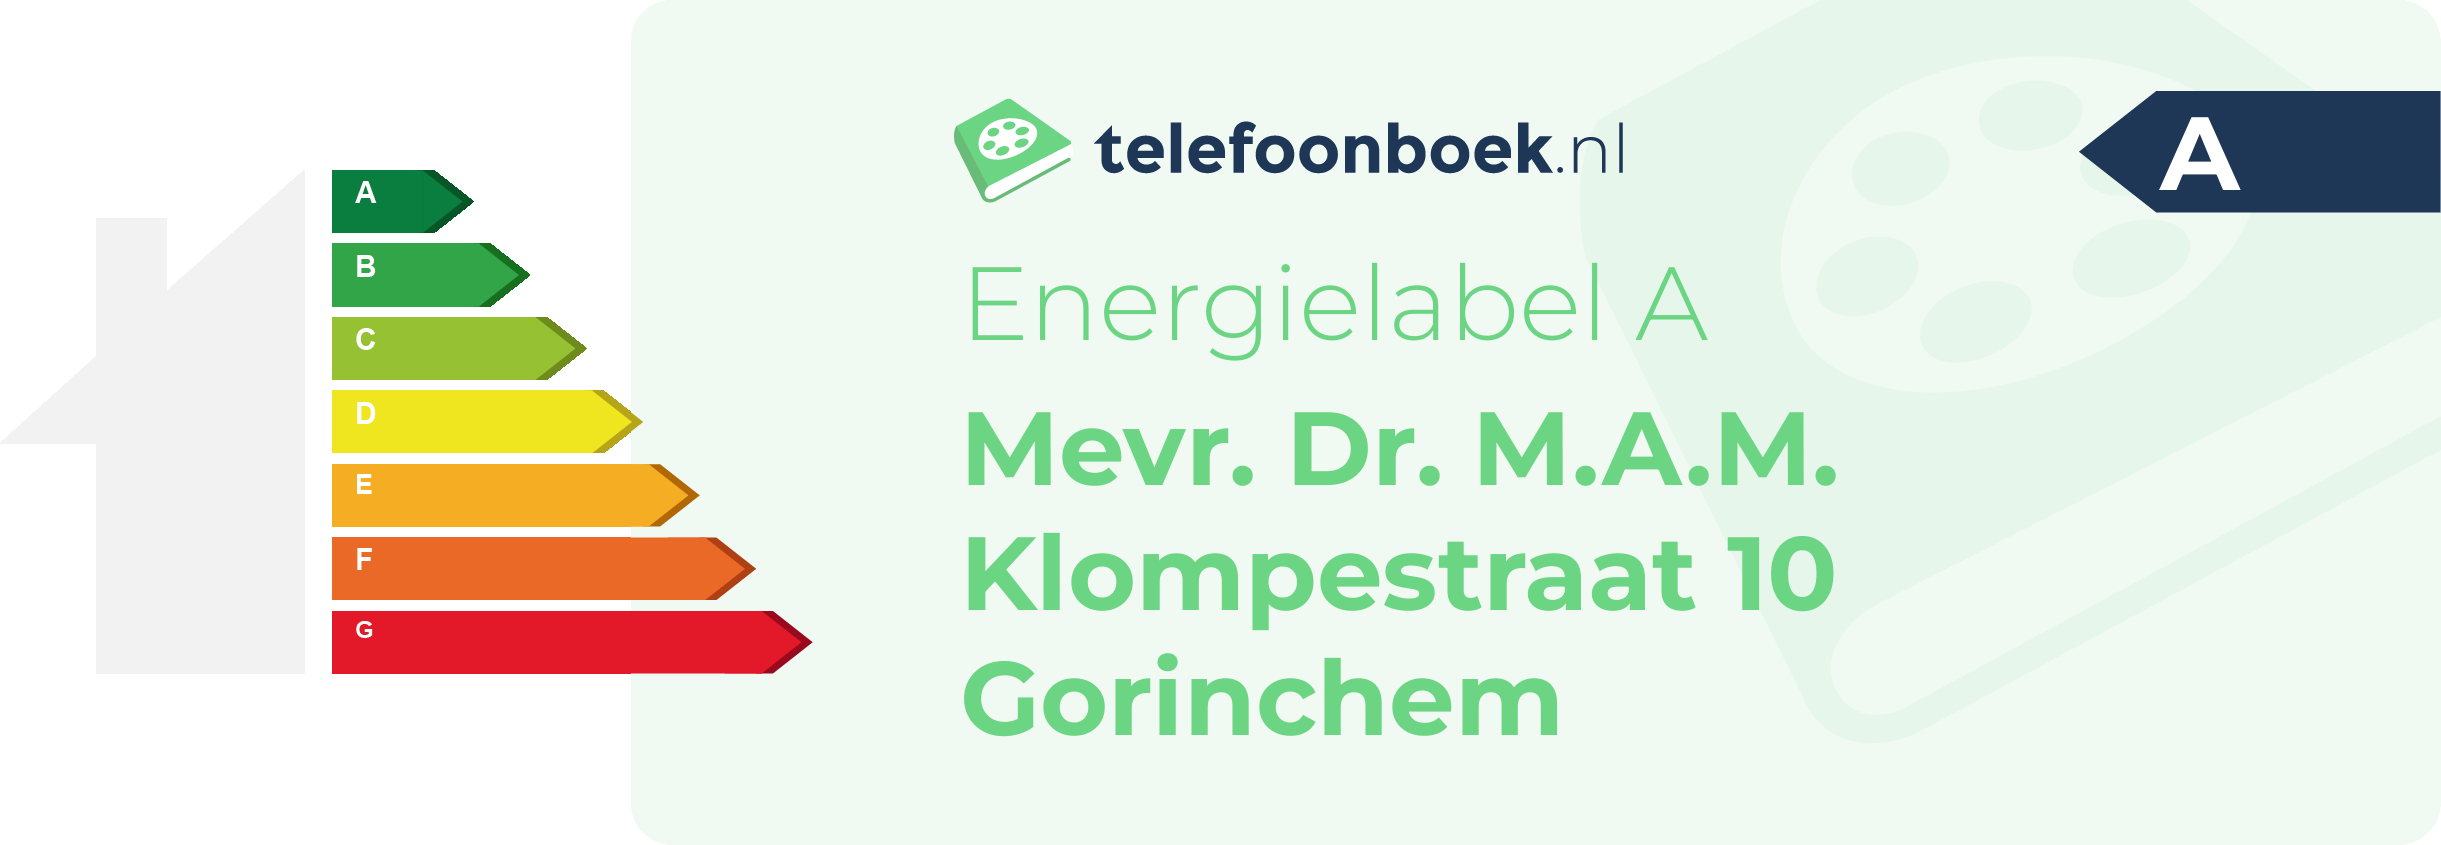 Energielabel Mevr. Dr. M.A.M. Klompestraat 10 Gorinchem